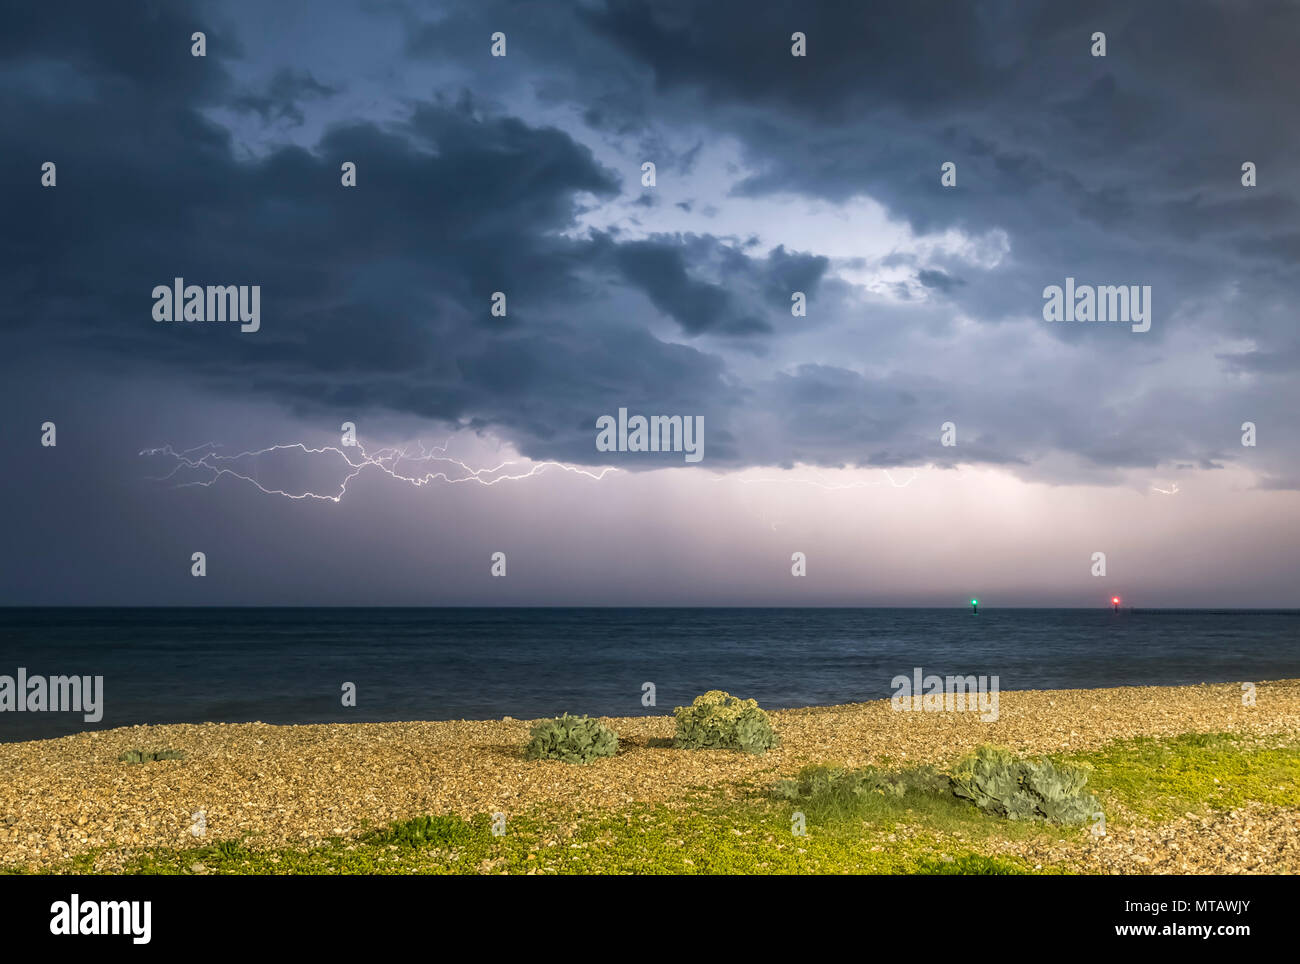 Colpo di fulmine sul mare di notte, con dark moody nuvole temporalesche, oltre la British south coast in Inghilterra, Regno Unito. Foto Stock